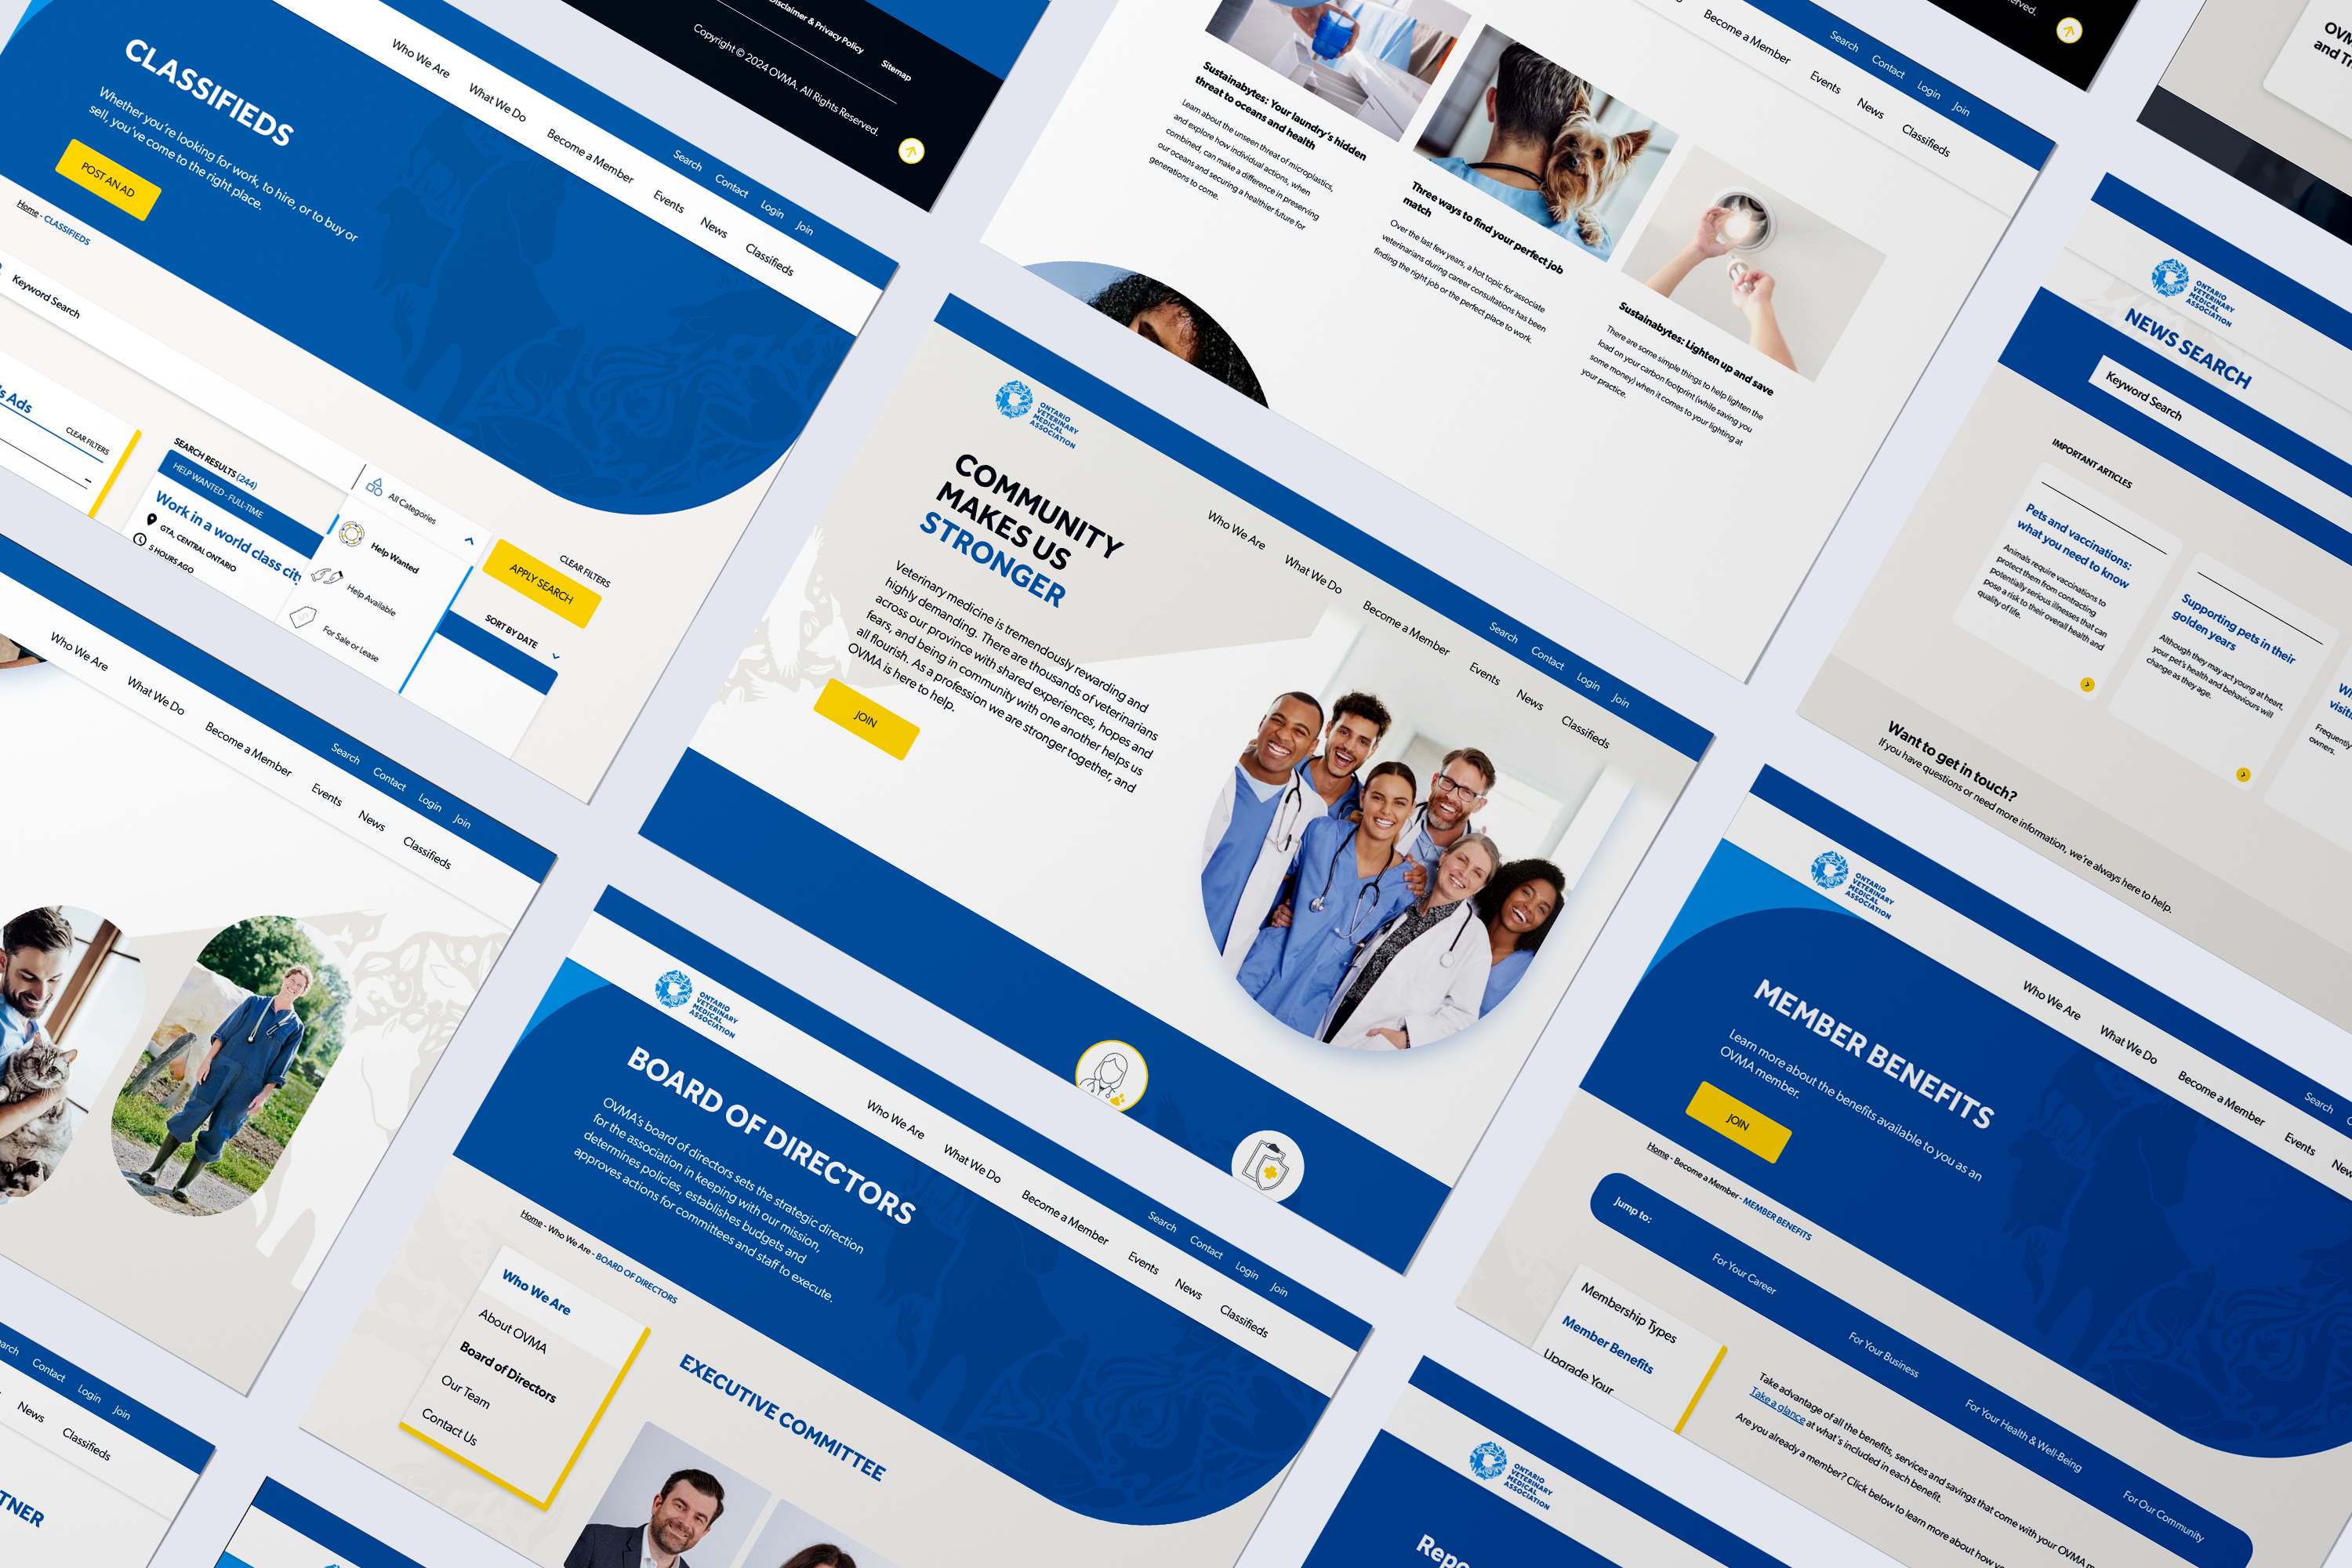 College of Veterinarians of Ontario website design layouts